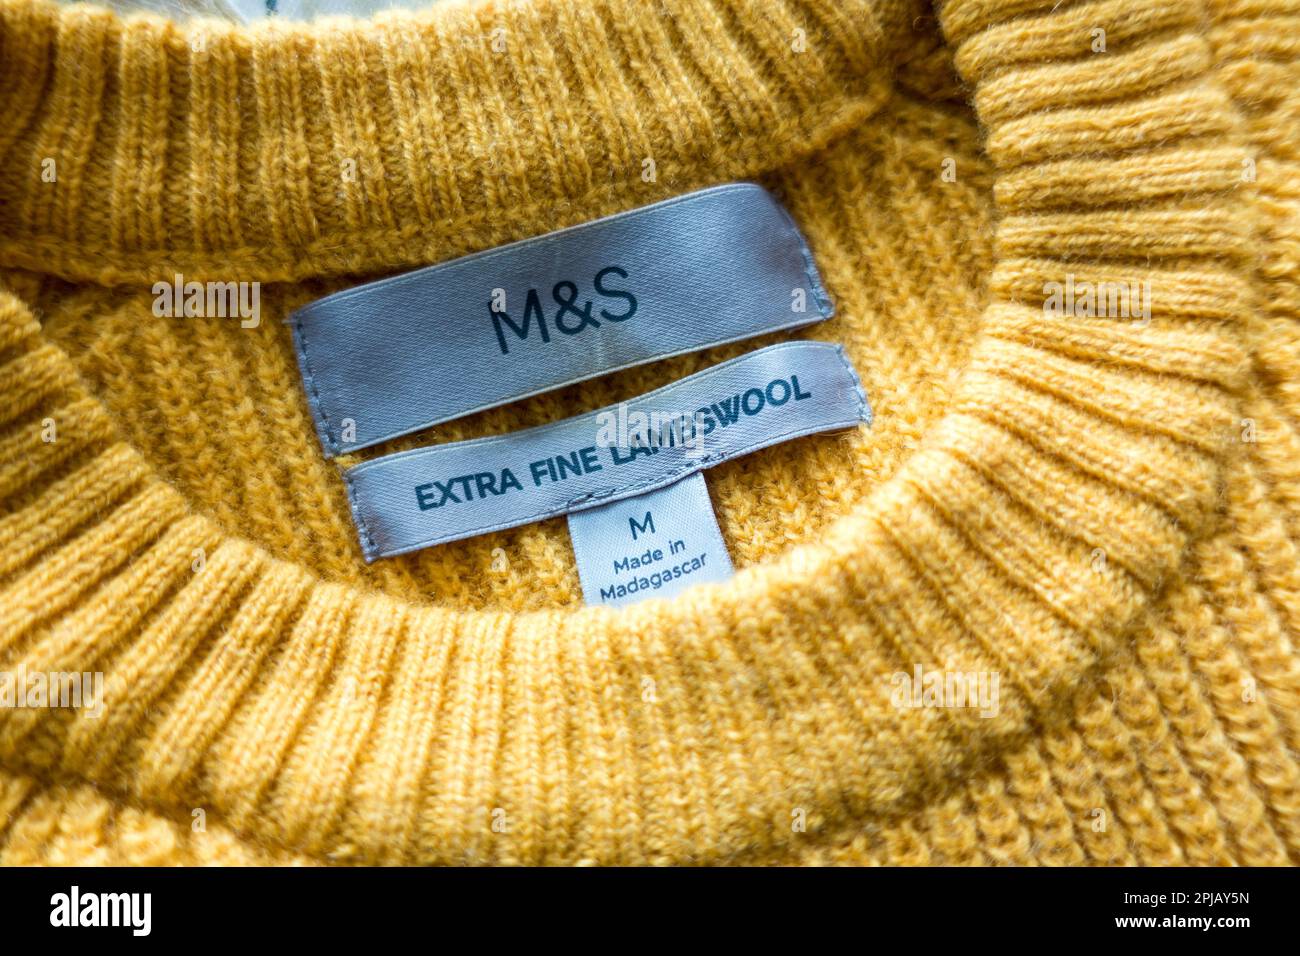 M&S extra fine lambwool clothing Stock Photo